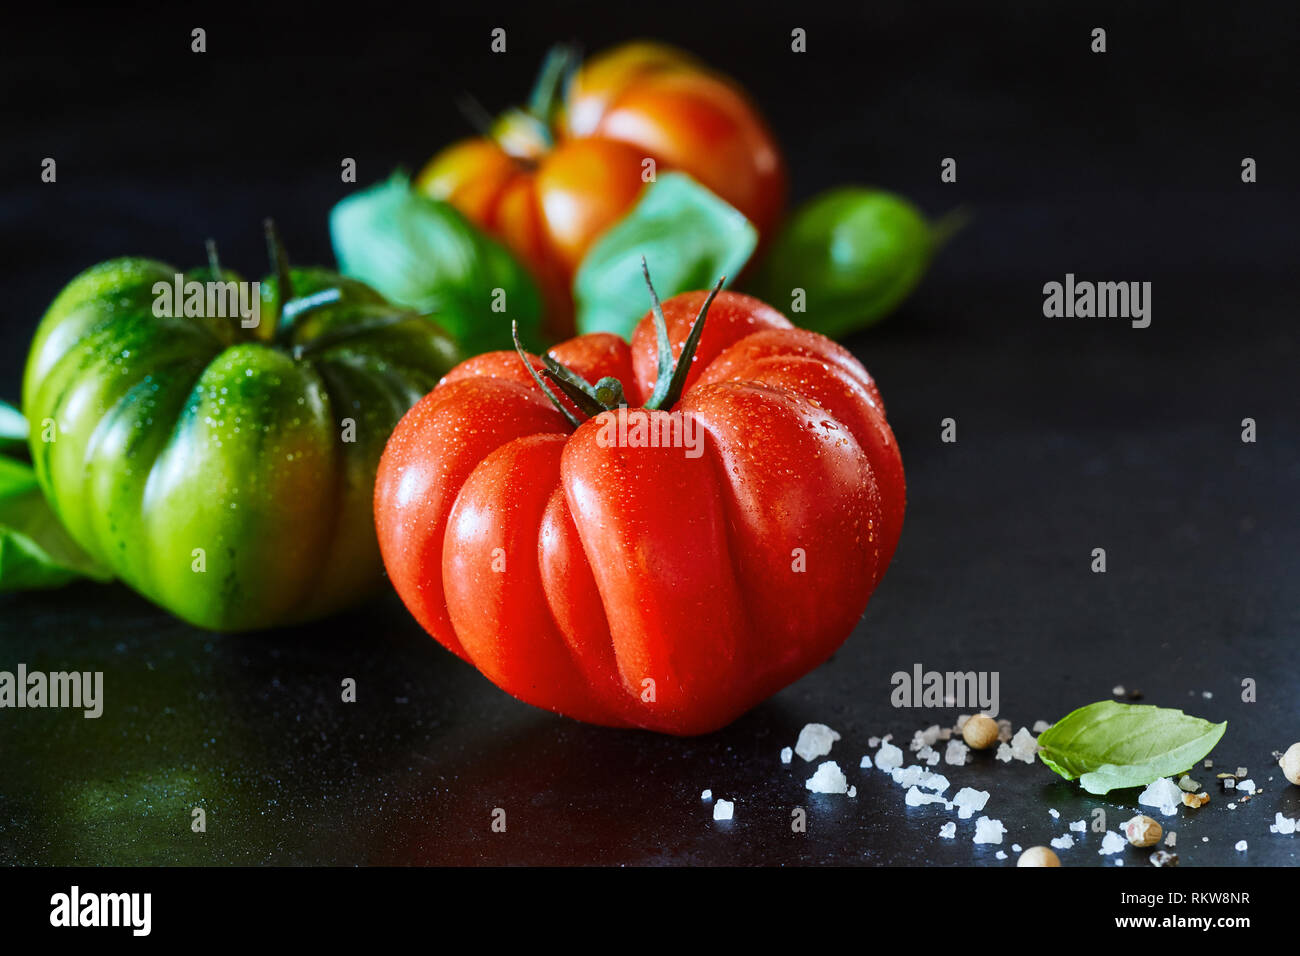 Gesund ganze Nasse frische reife rote Tomaten mit Wassertropfen und Gewürze auf einem schwarzen reflektierenden Hintergrund mit Kopie Raum und zwei zusätzliche Tomaten Stockfoto